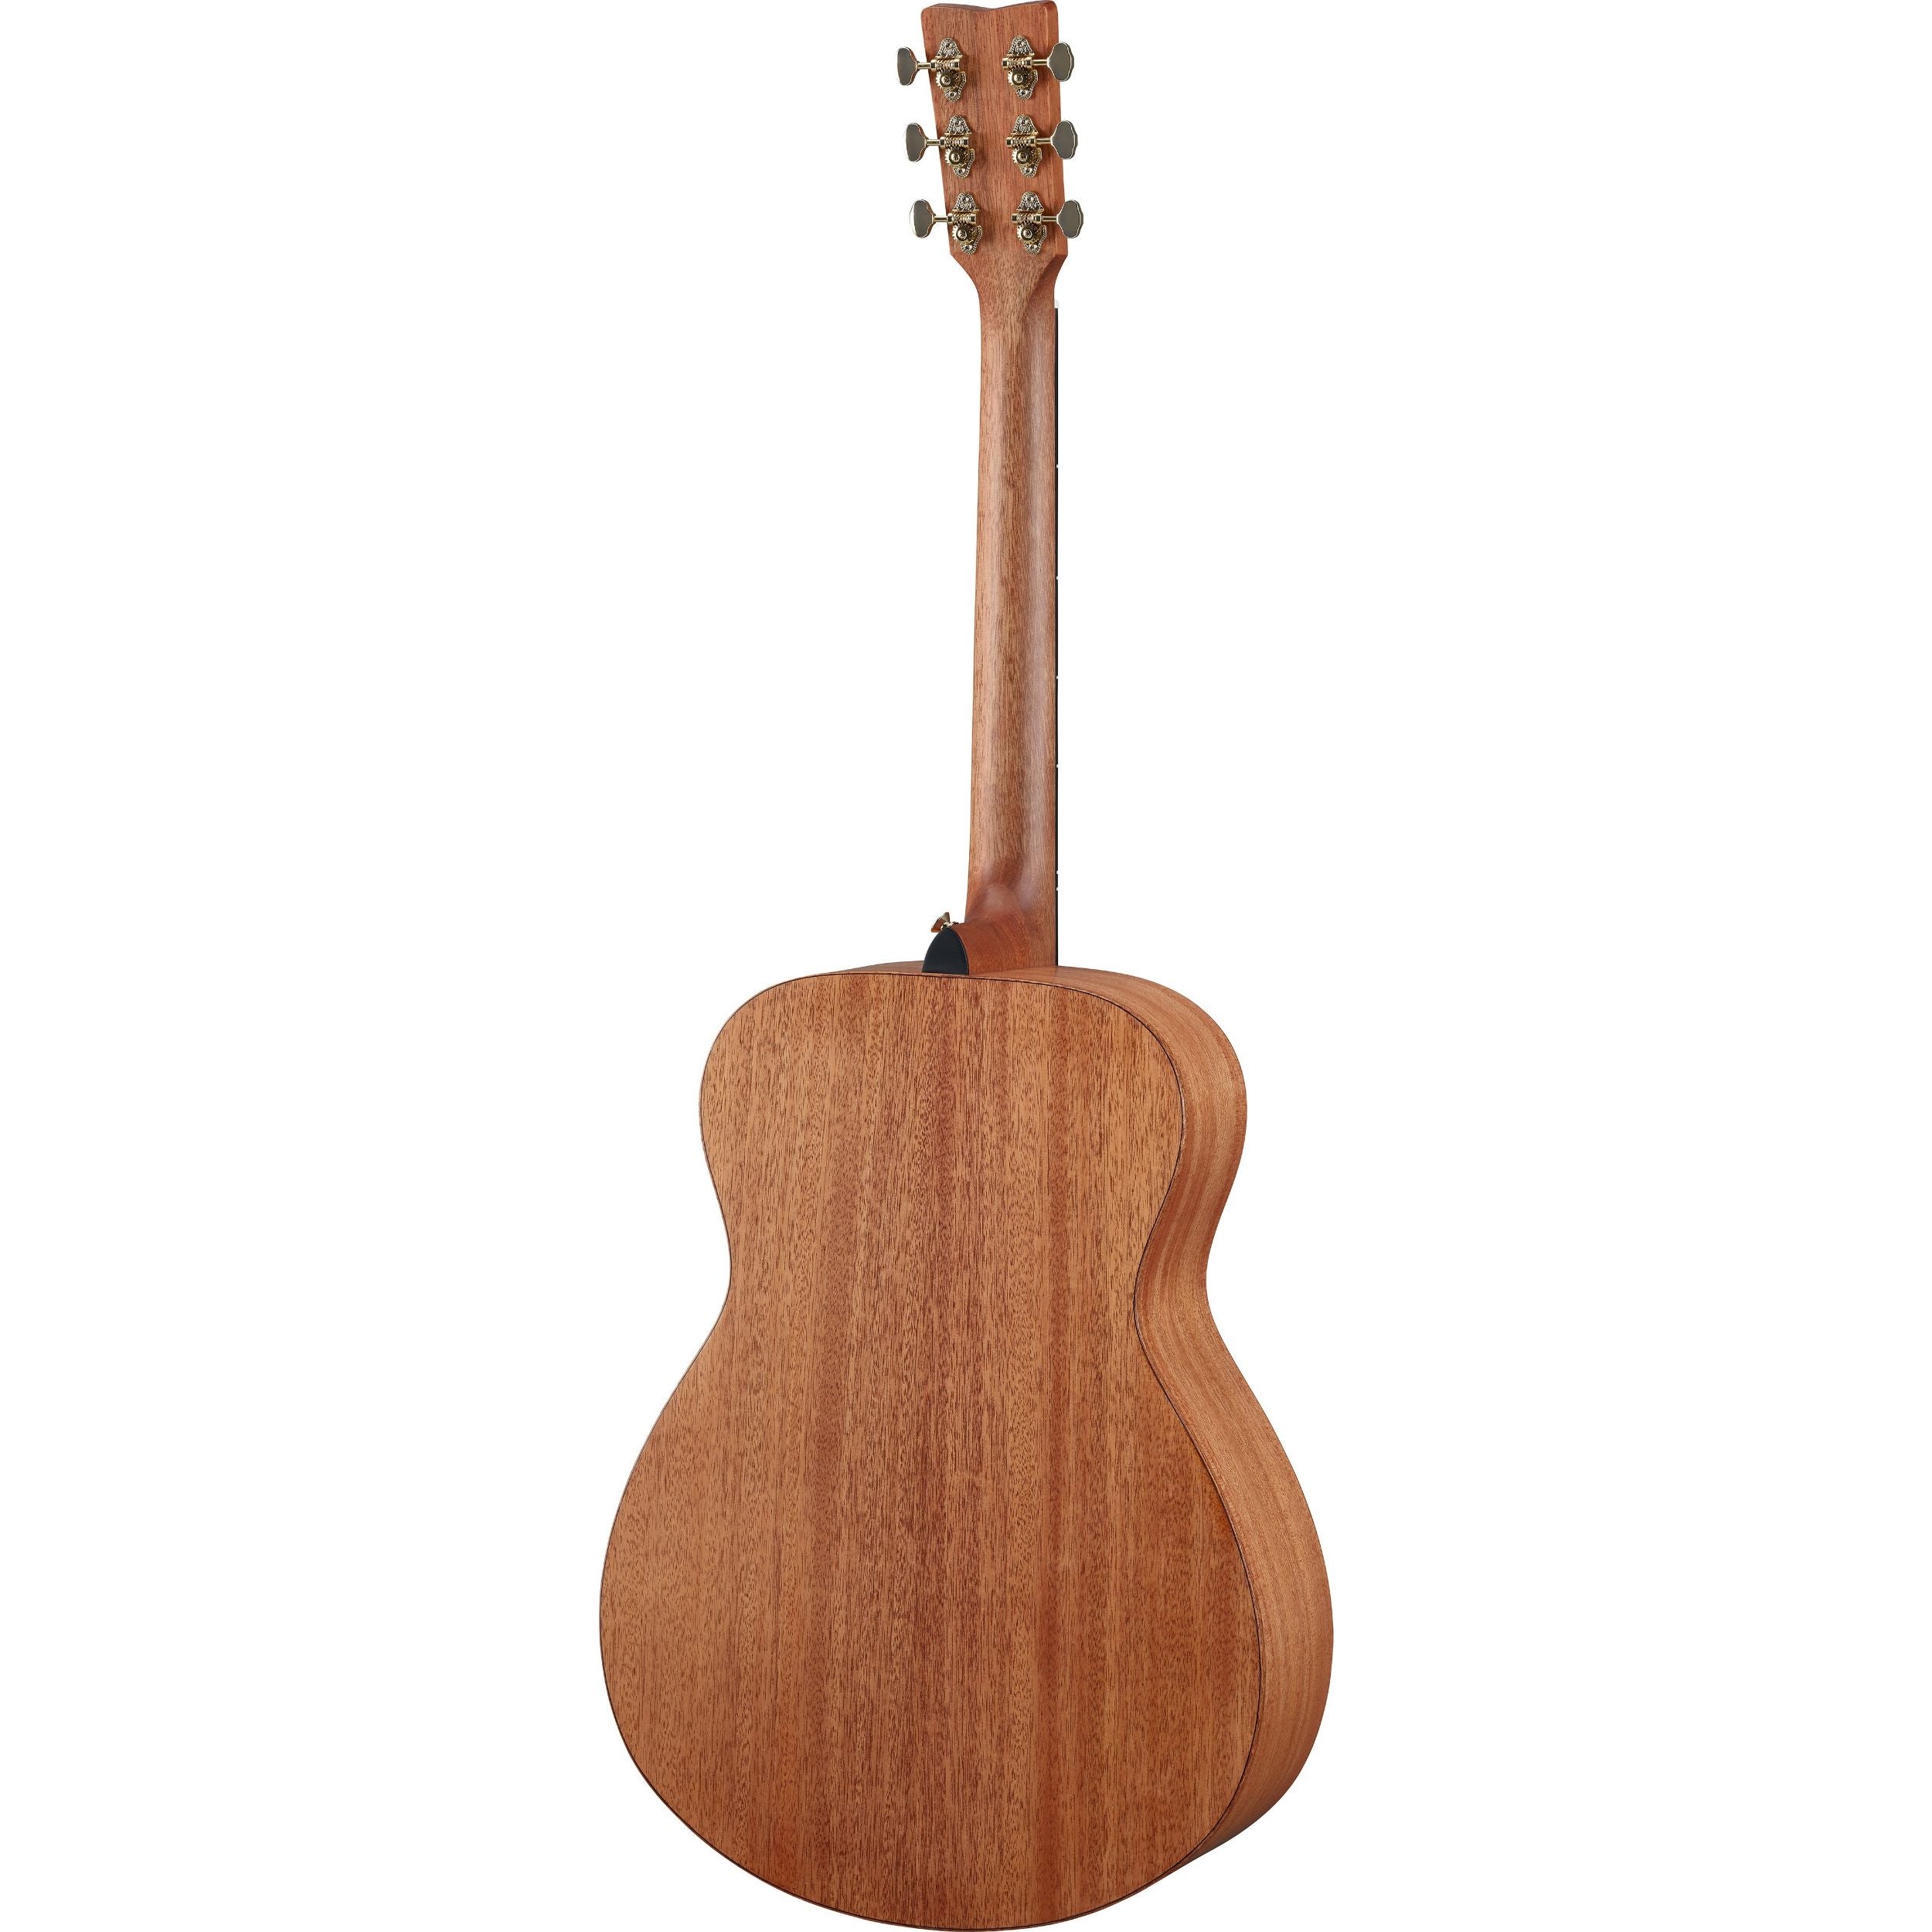 Yamaha STORIA-II Acoustic-Electric Guitar, Natural